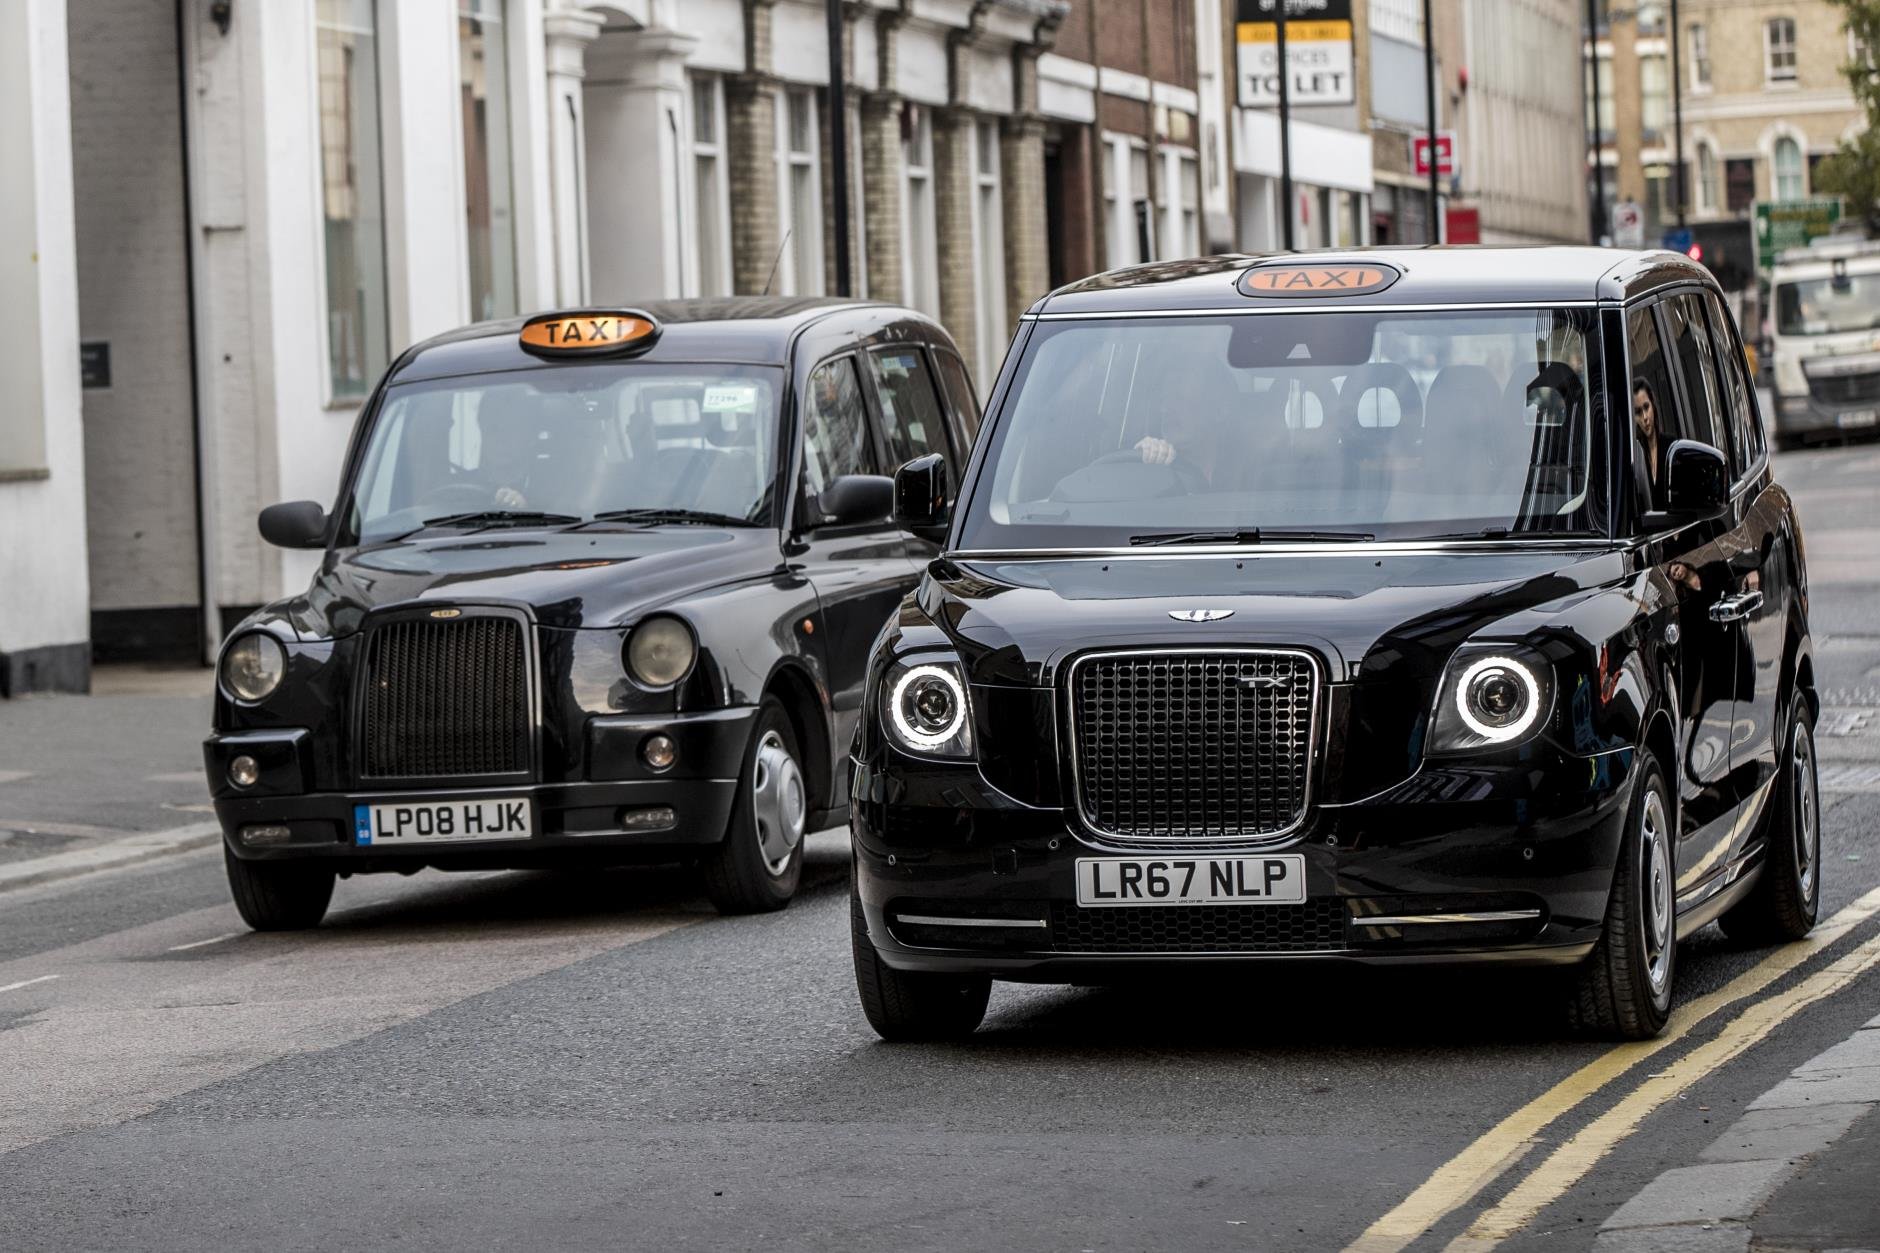 Taxi eléctrico de autonomía extendida LEVC TX, basado en el black cab londinense